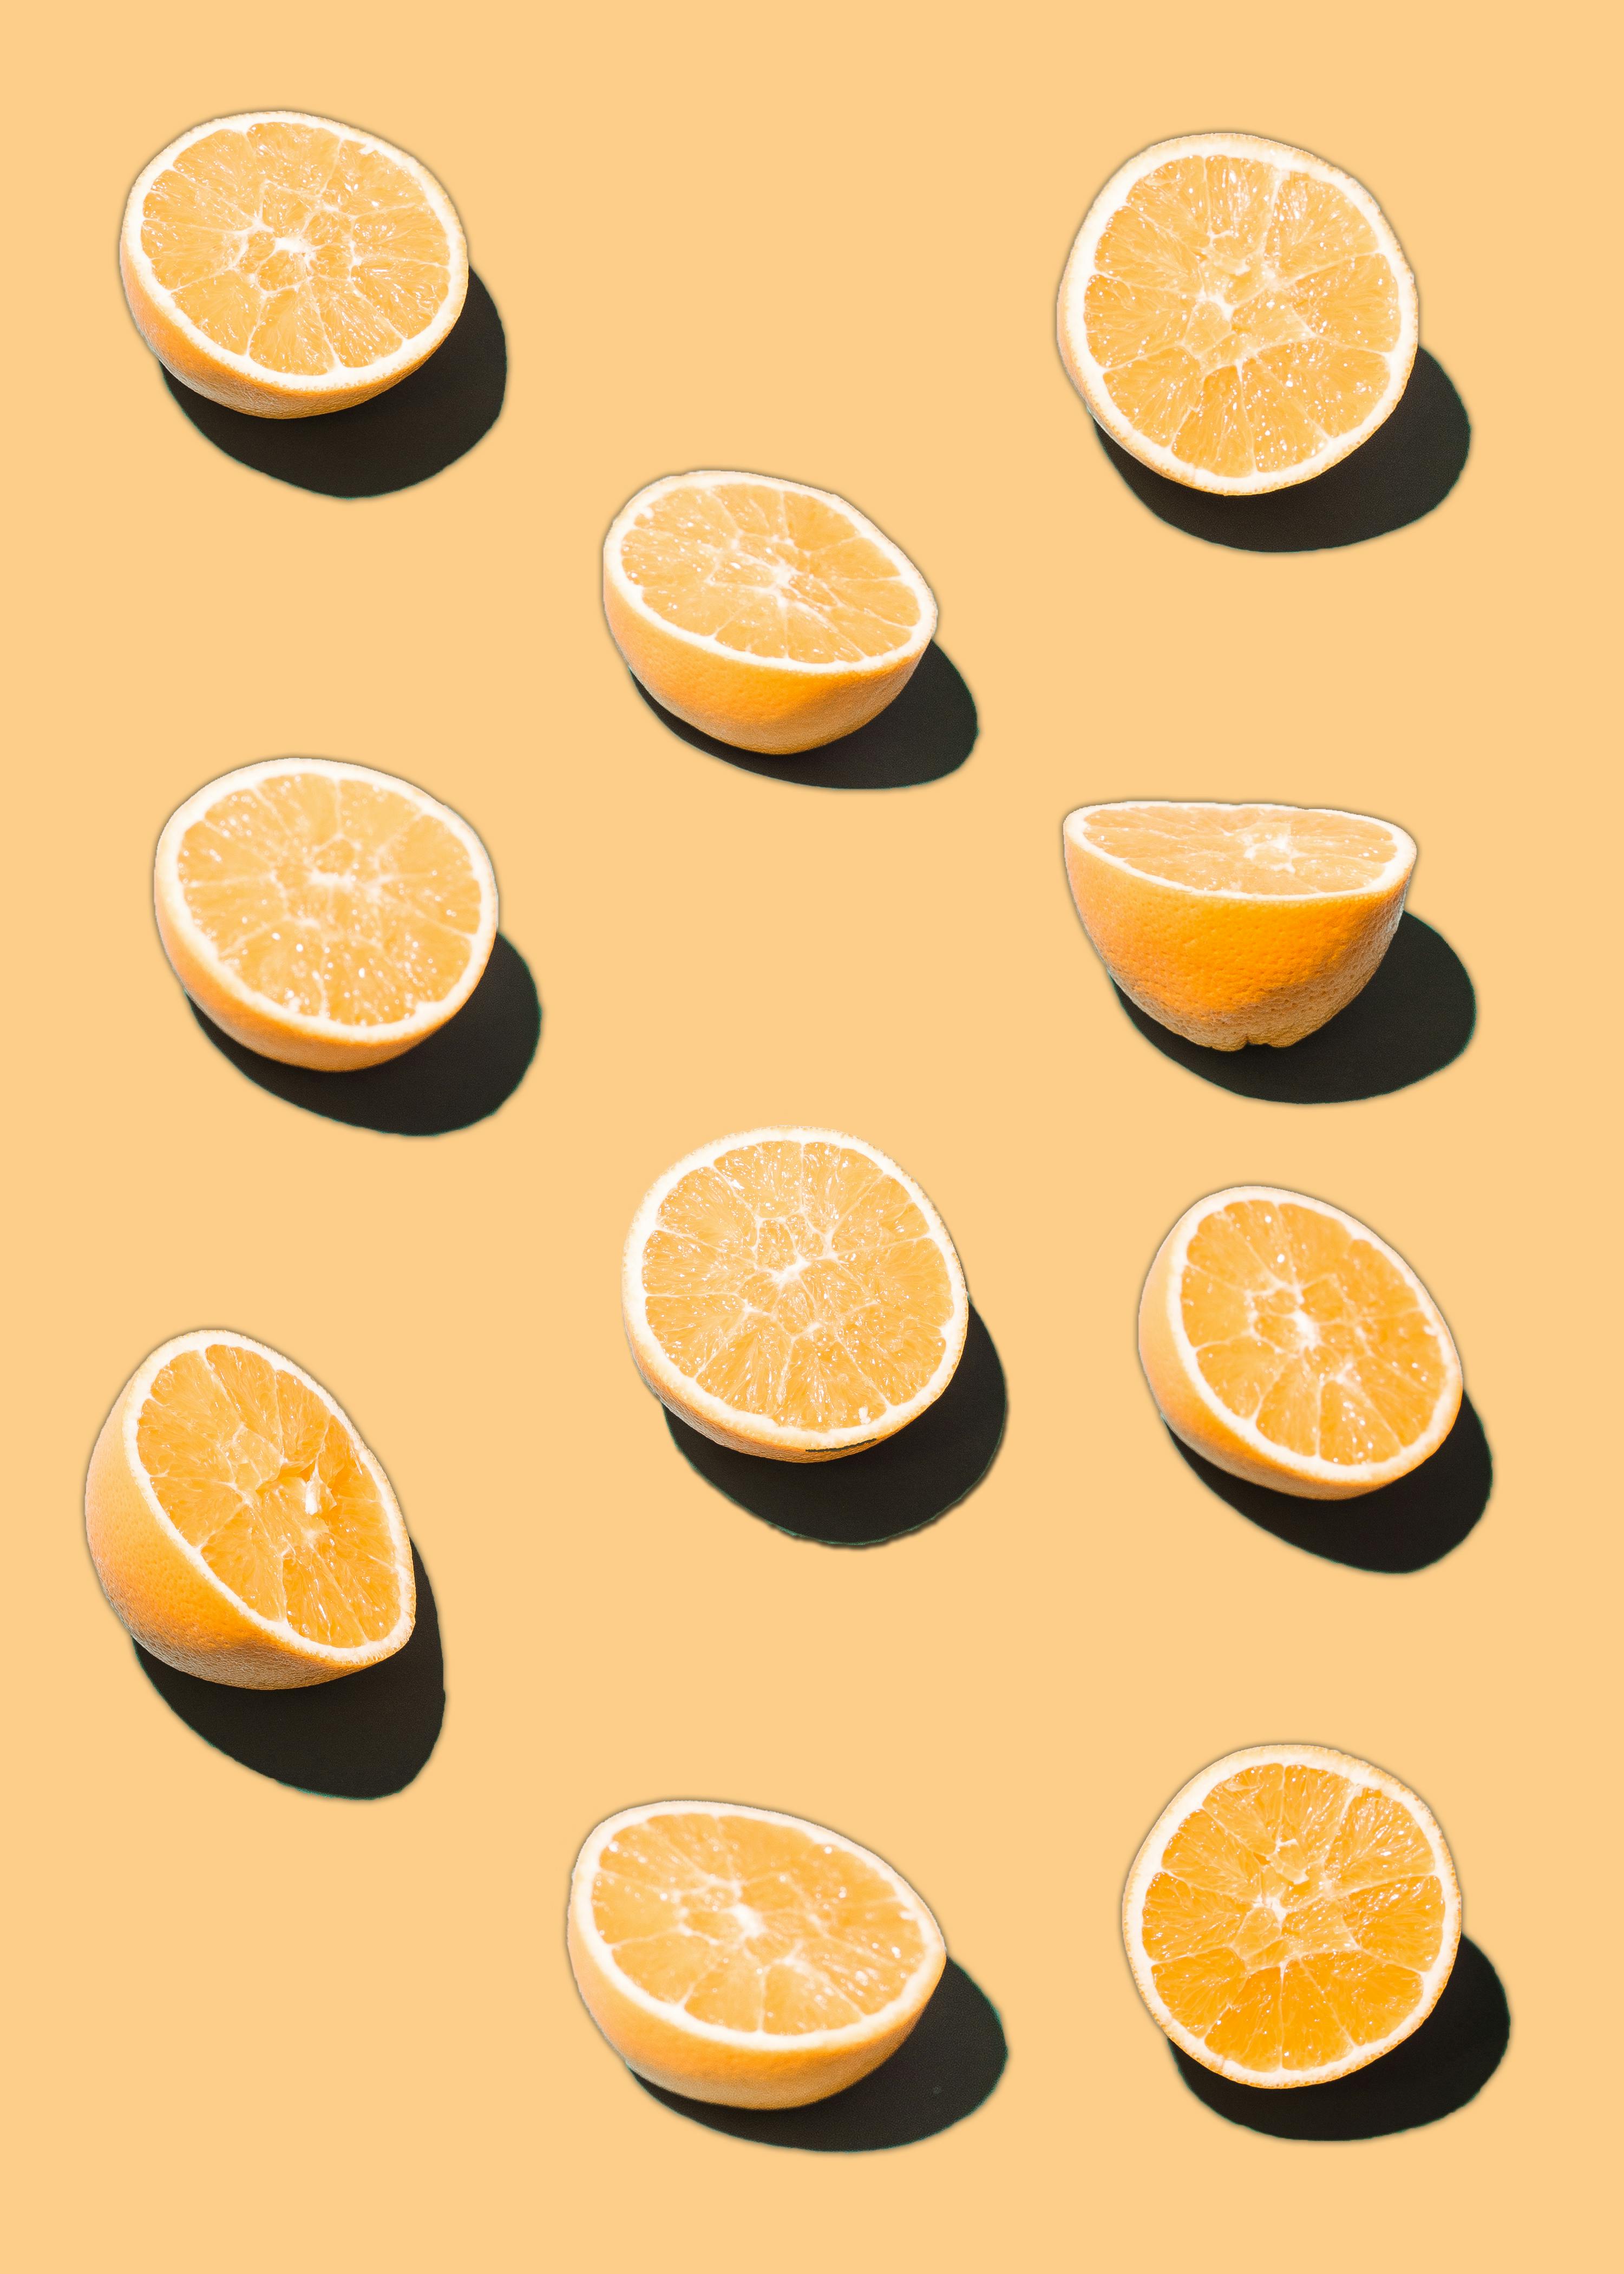 Hình ảnh quả cam sành cam canh sạch đẹp tươi ngon ngọt